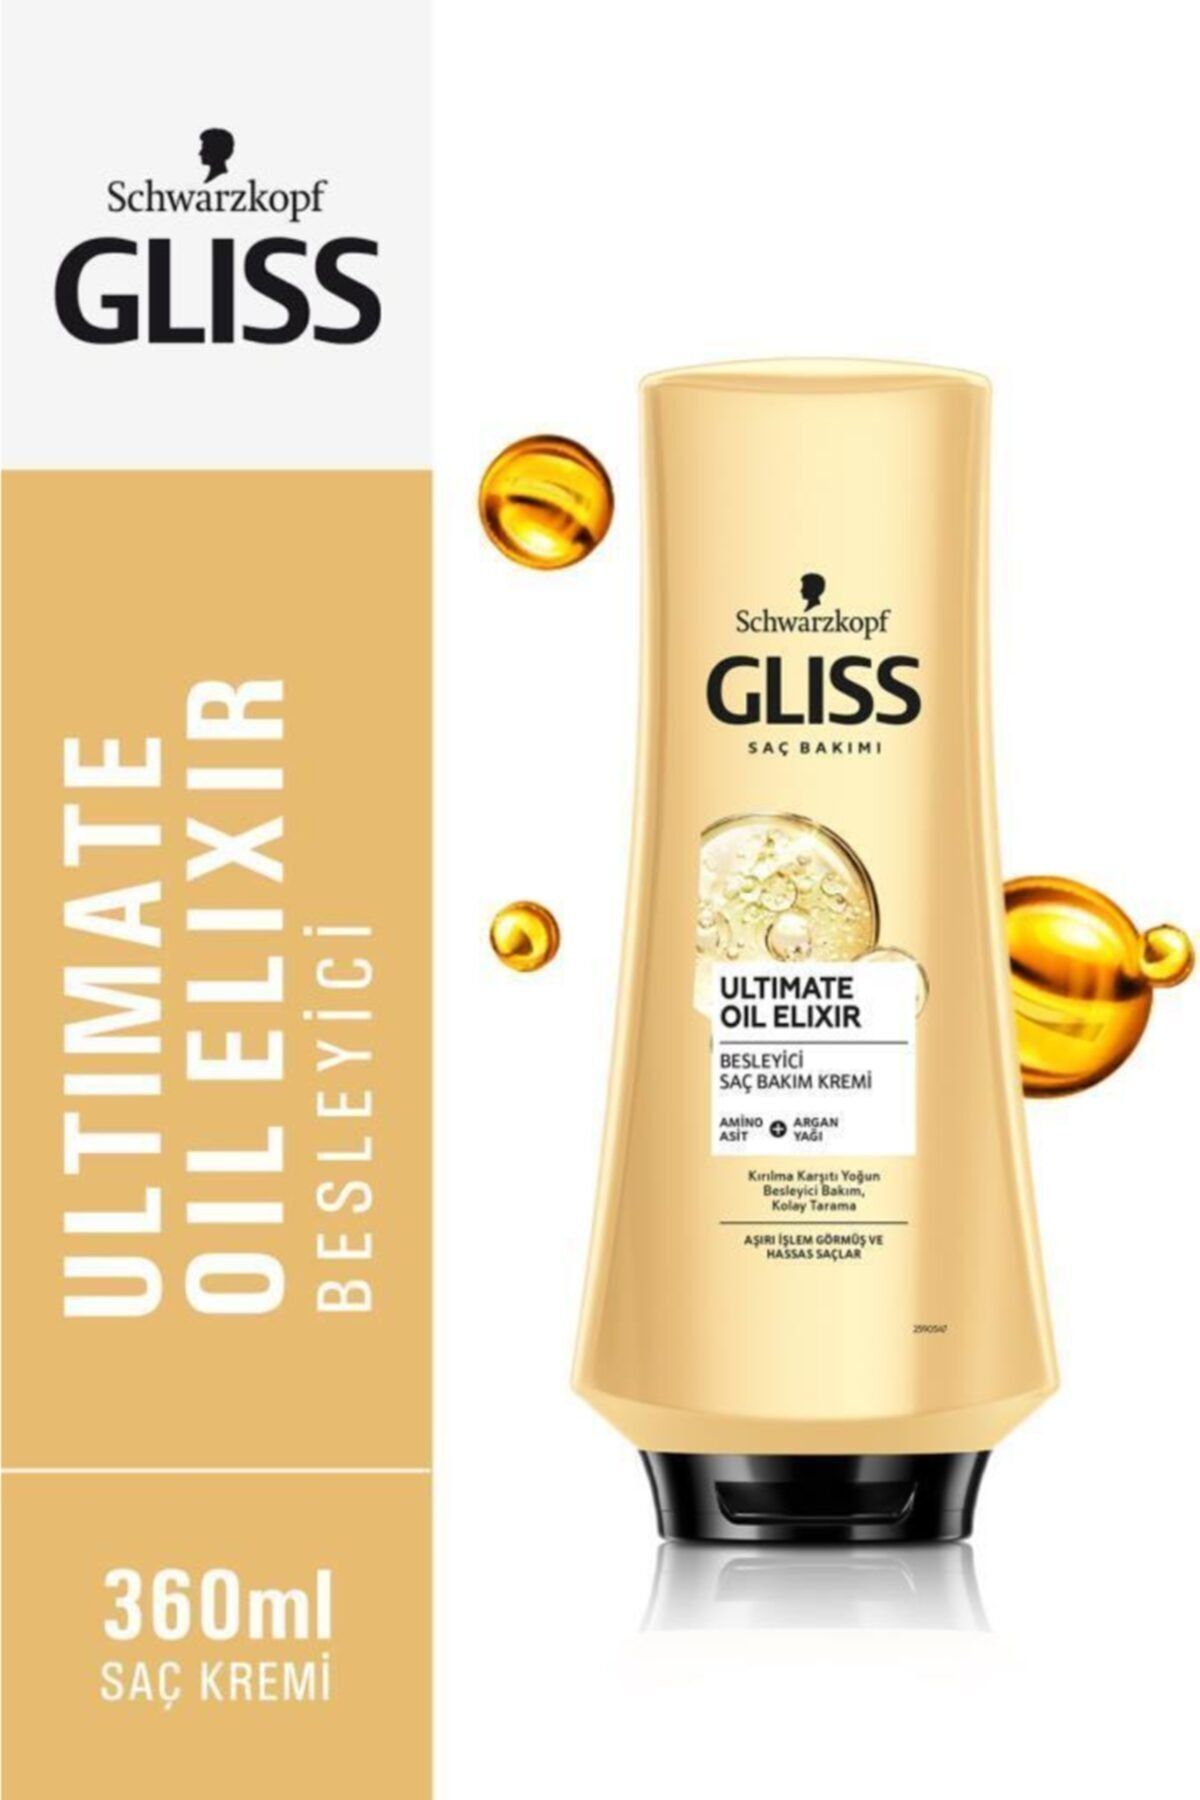 Gliss Ultimate Oil Elixir Besleyici Saç Bakım Kremi - Aminoasit Ve Argan Yağı Ile 360 ml